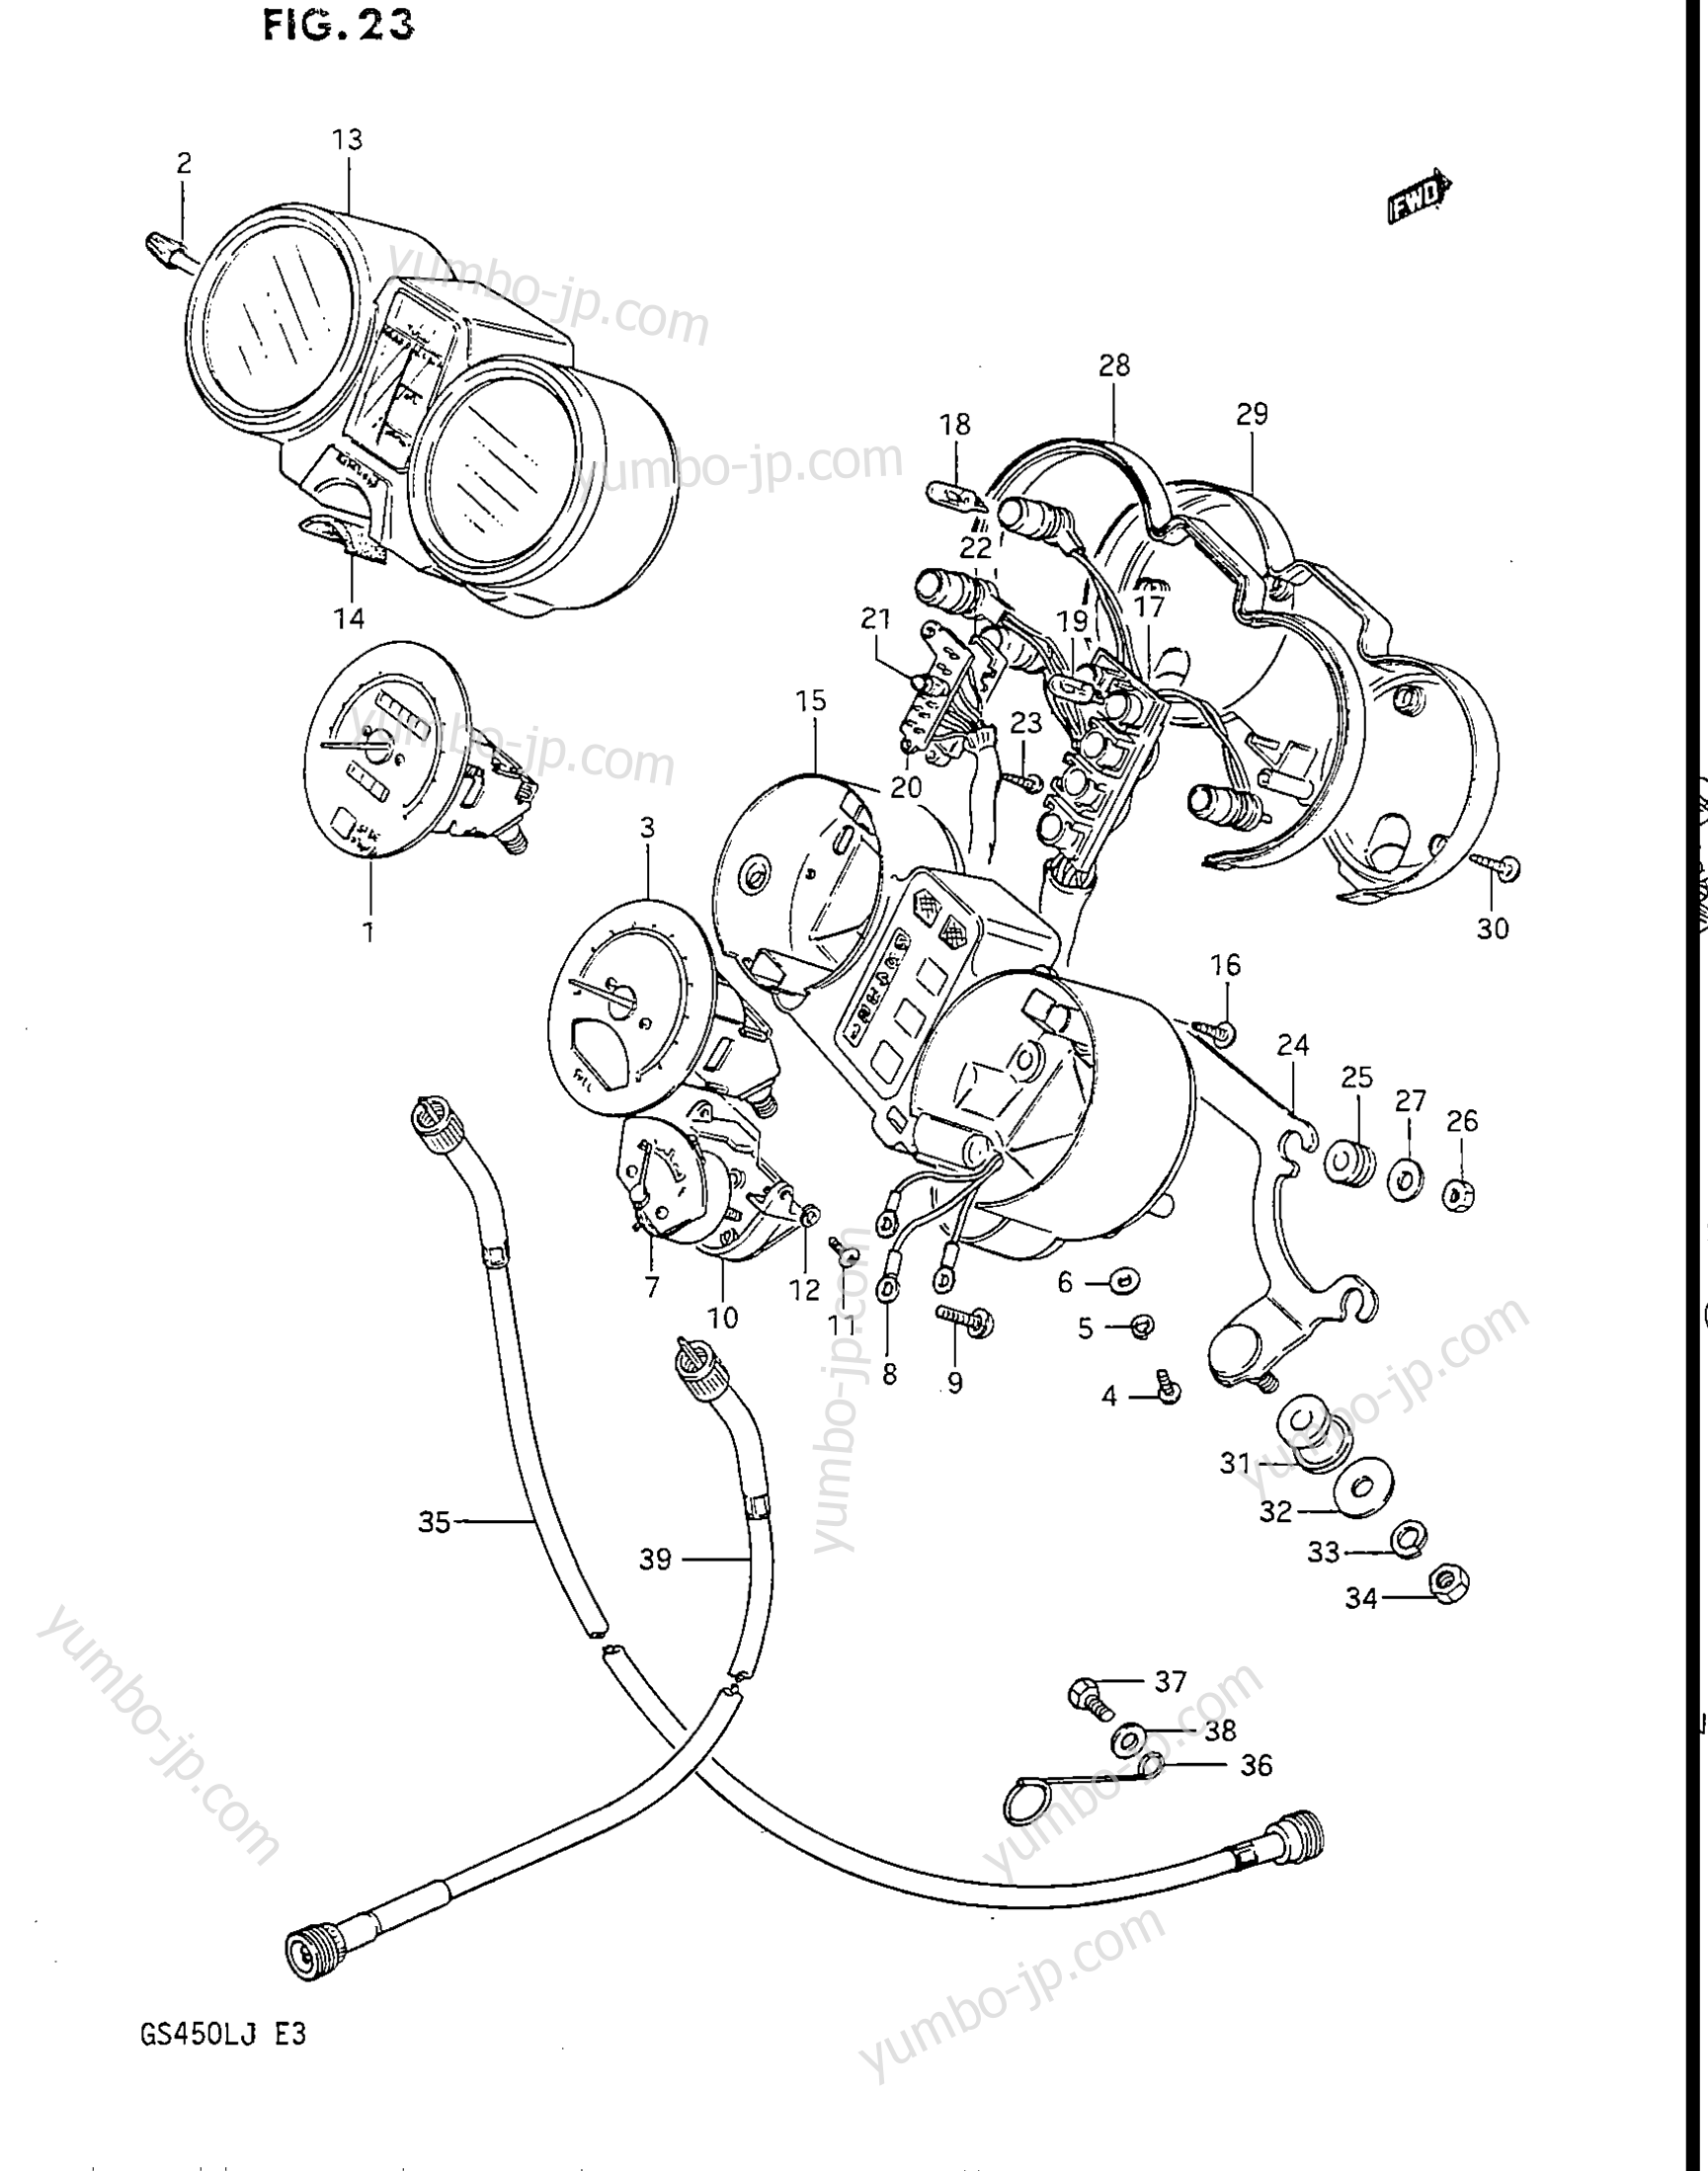 Speedometer - Tachometer for motorcycles SUZUKI GS450L 1986 year